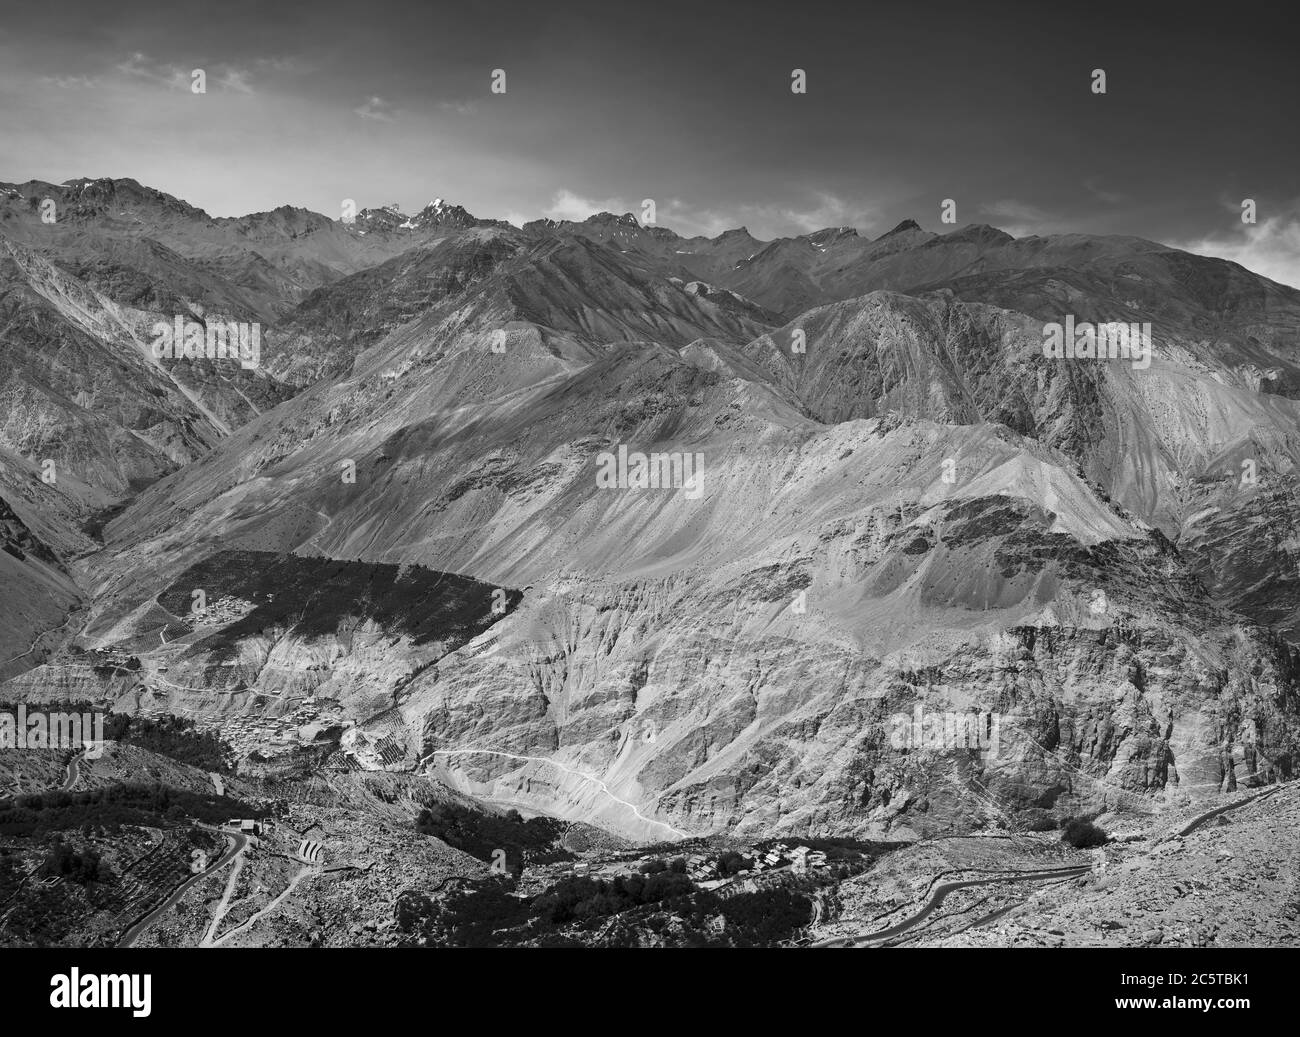 Vista elevata dell'Himalaya e della valle del fiume, tra cui la strada tortuosa in estate vicino a Nako, Himachal Pradesh, India. Foto Stock